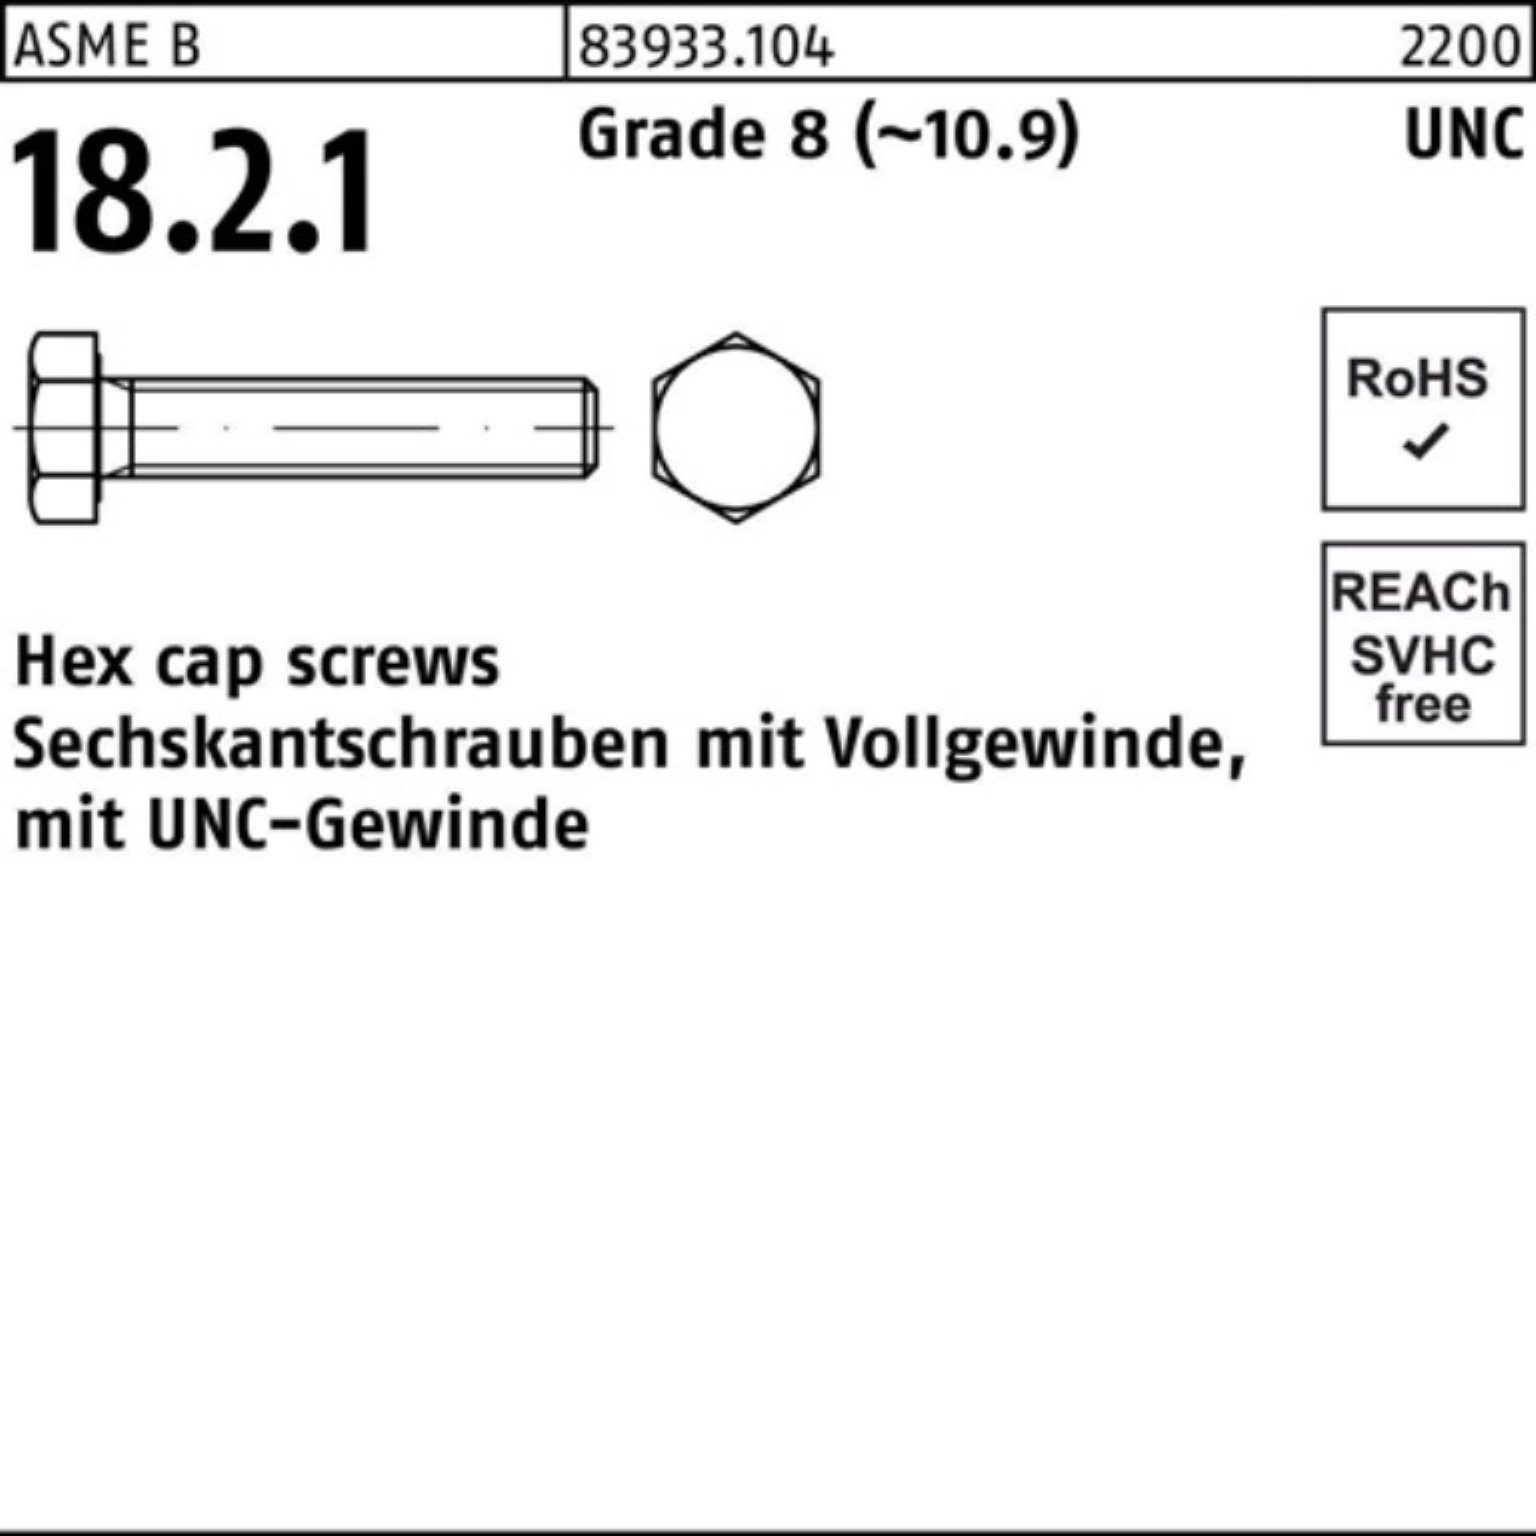 Reyher Sechskantschraube 100er Pack Sechskantschraube R 83933 UNC-Gewinde VG 7/16x 7/8 Grade 8